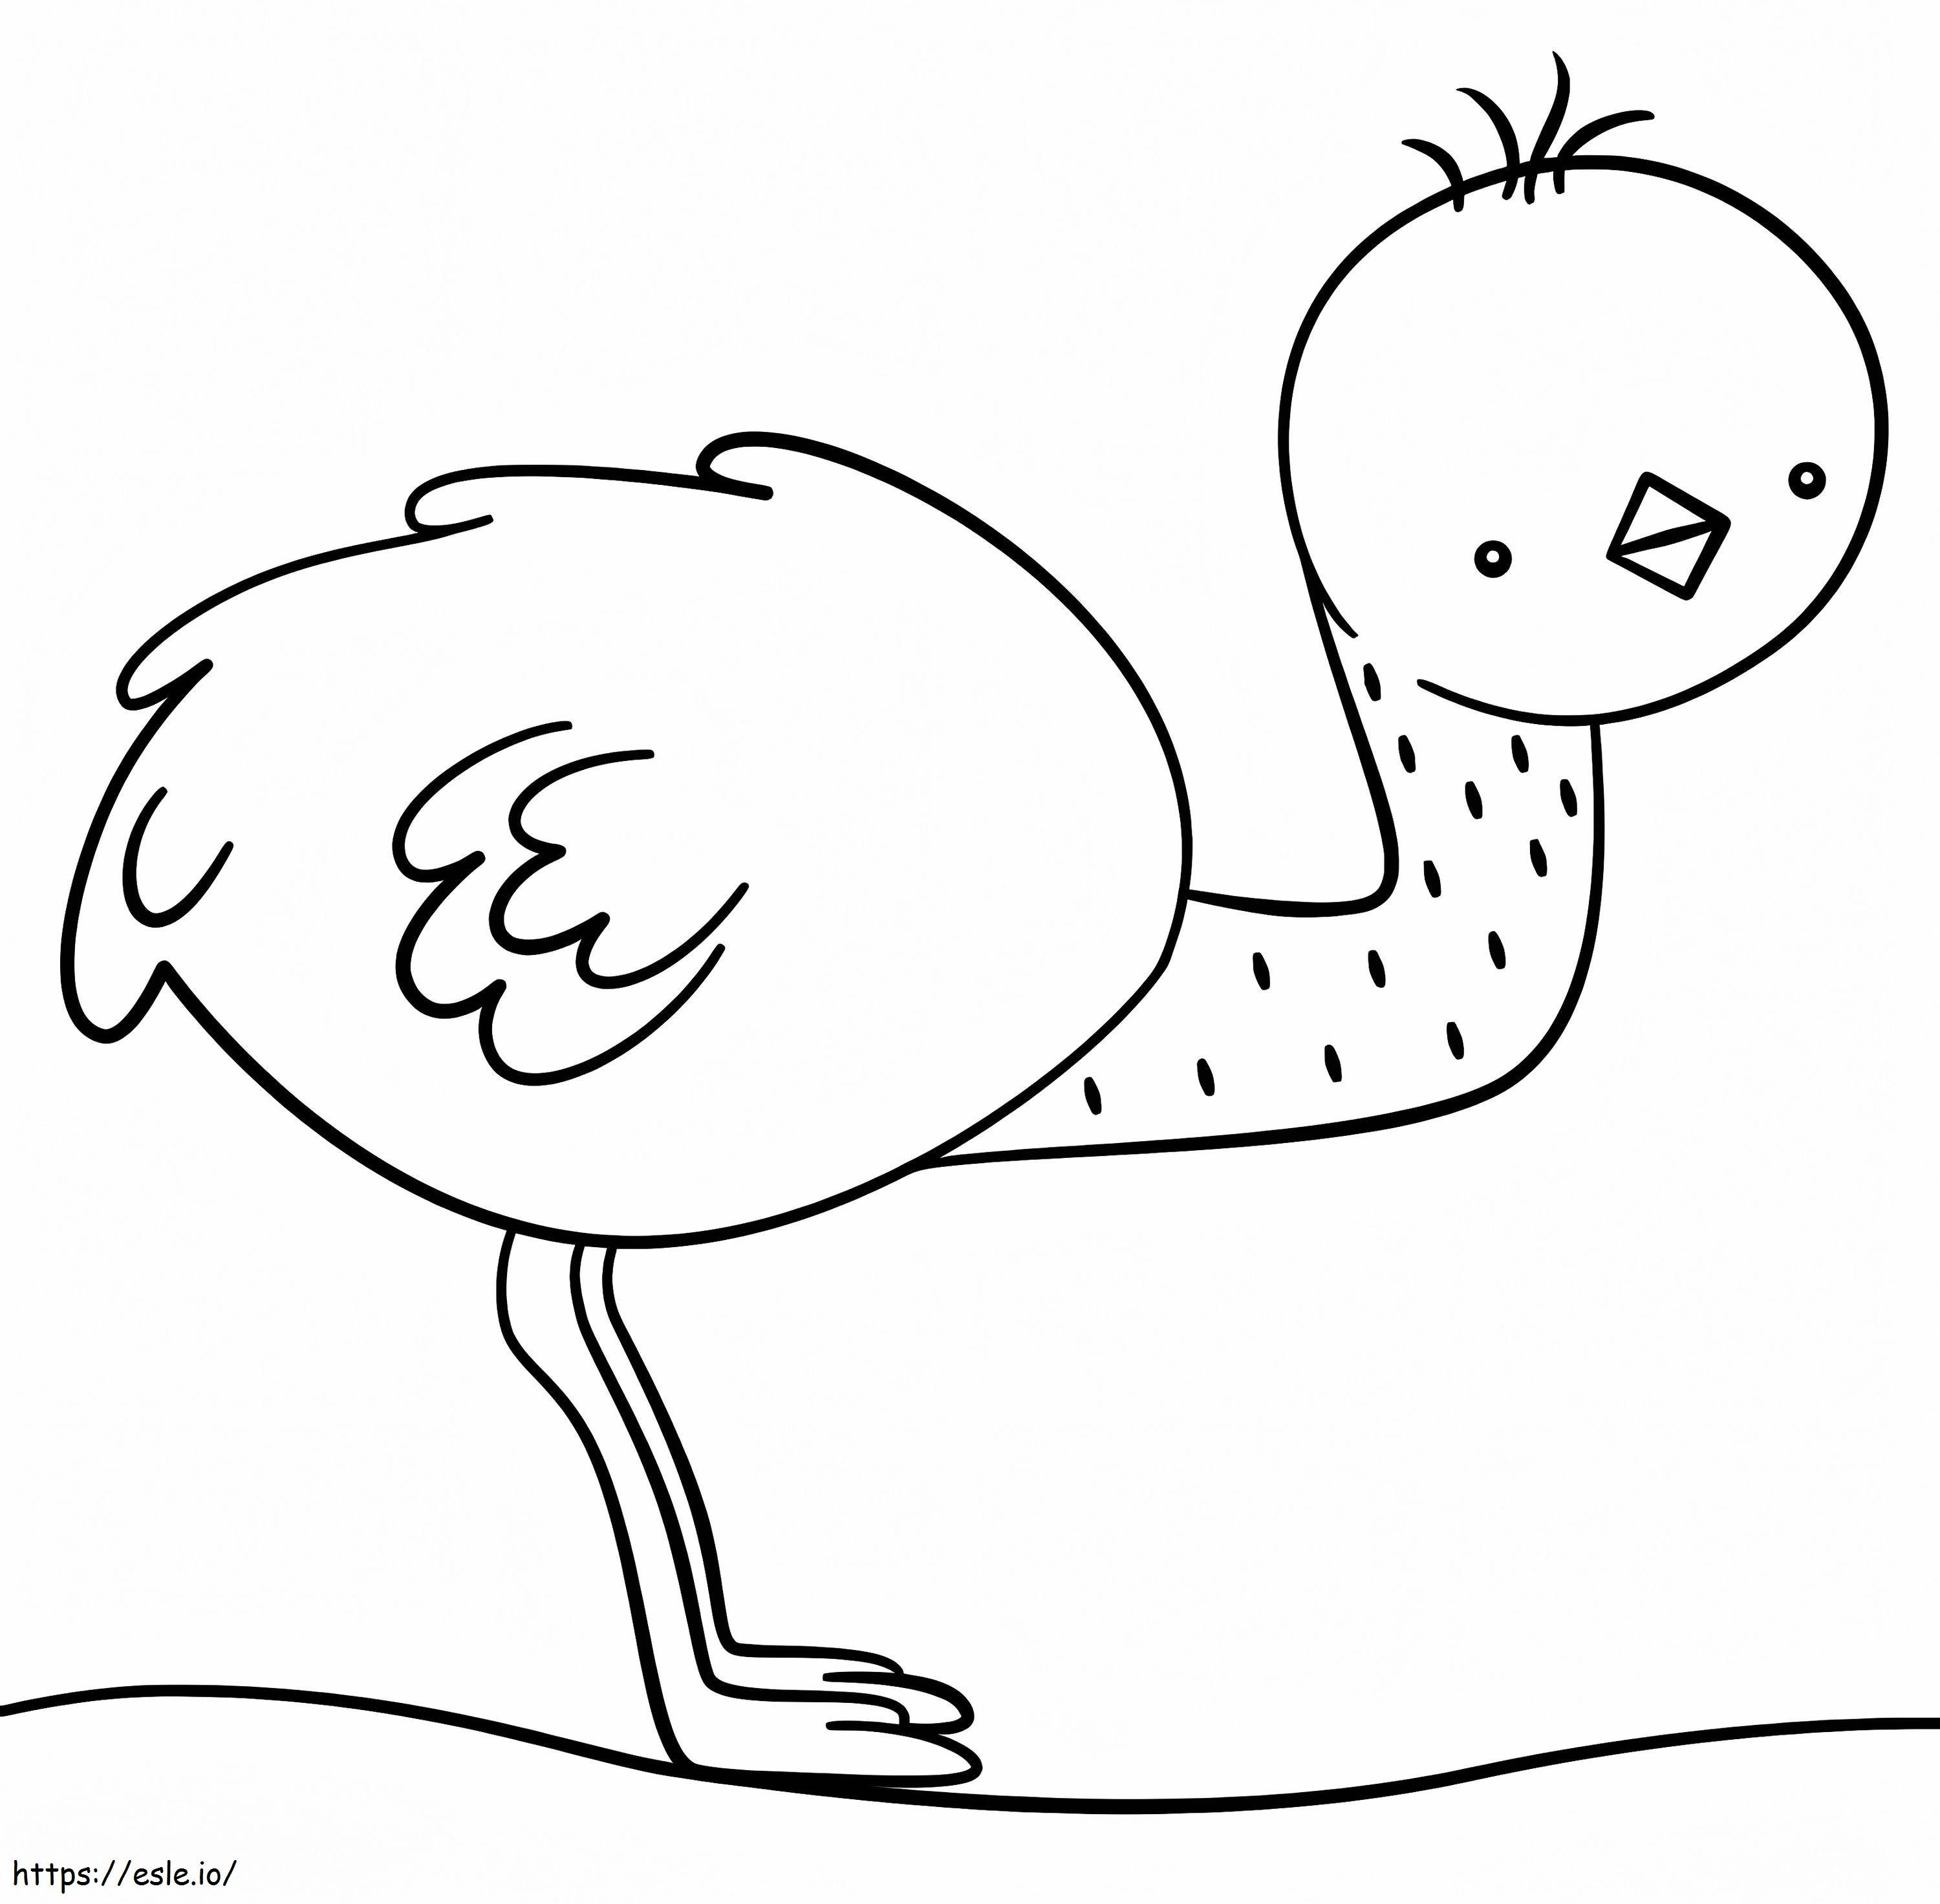 Kleiner süßer Emu ausmalbilder